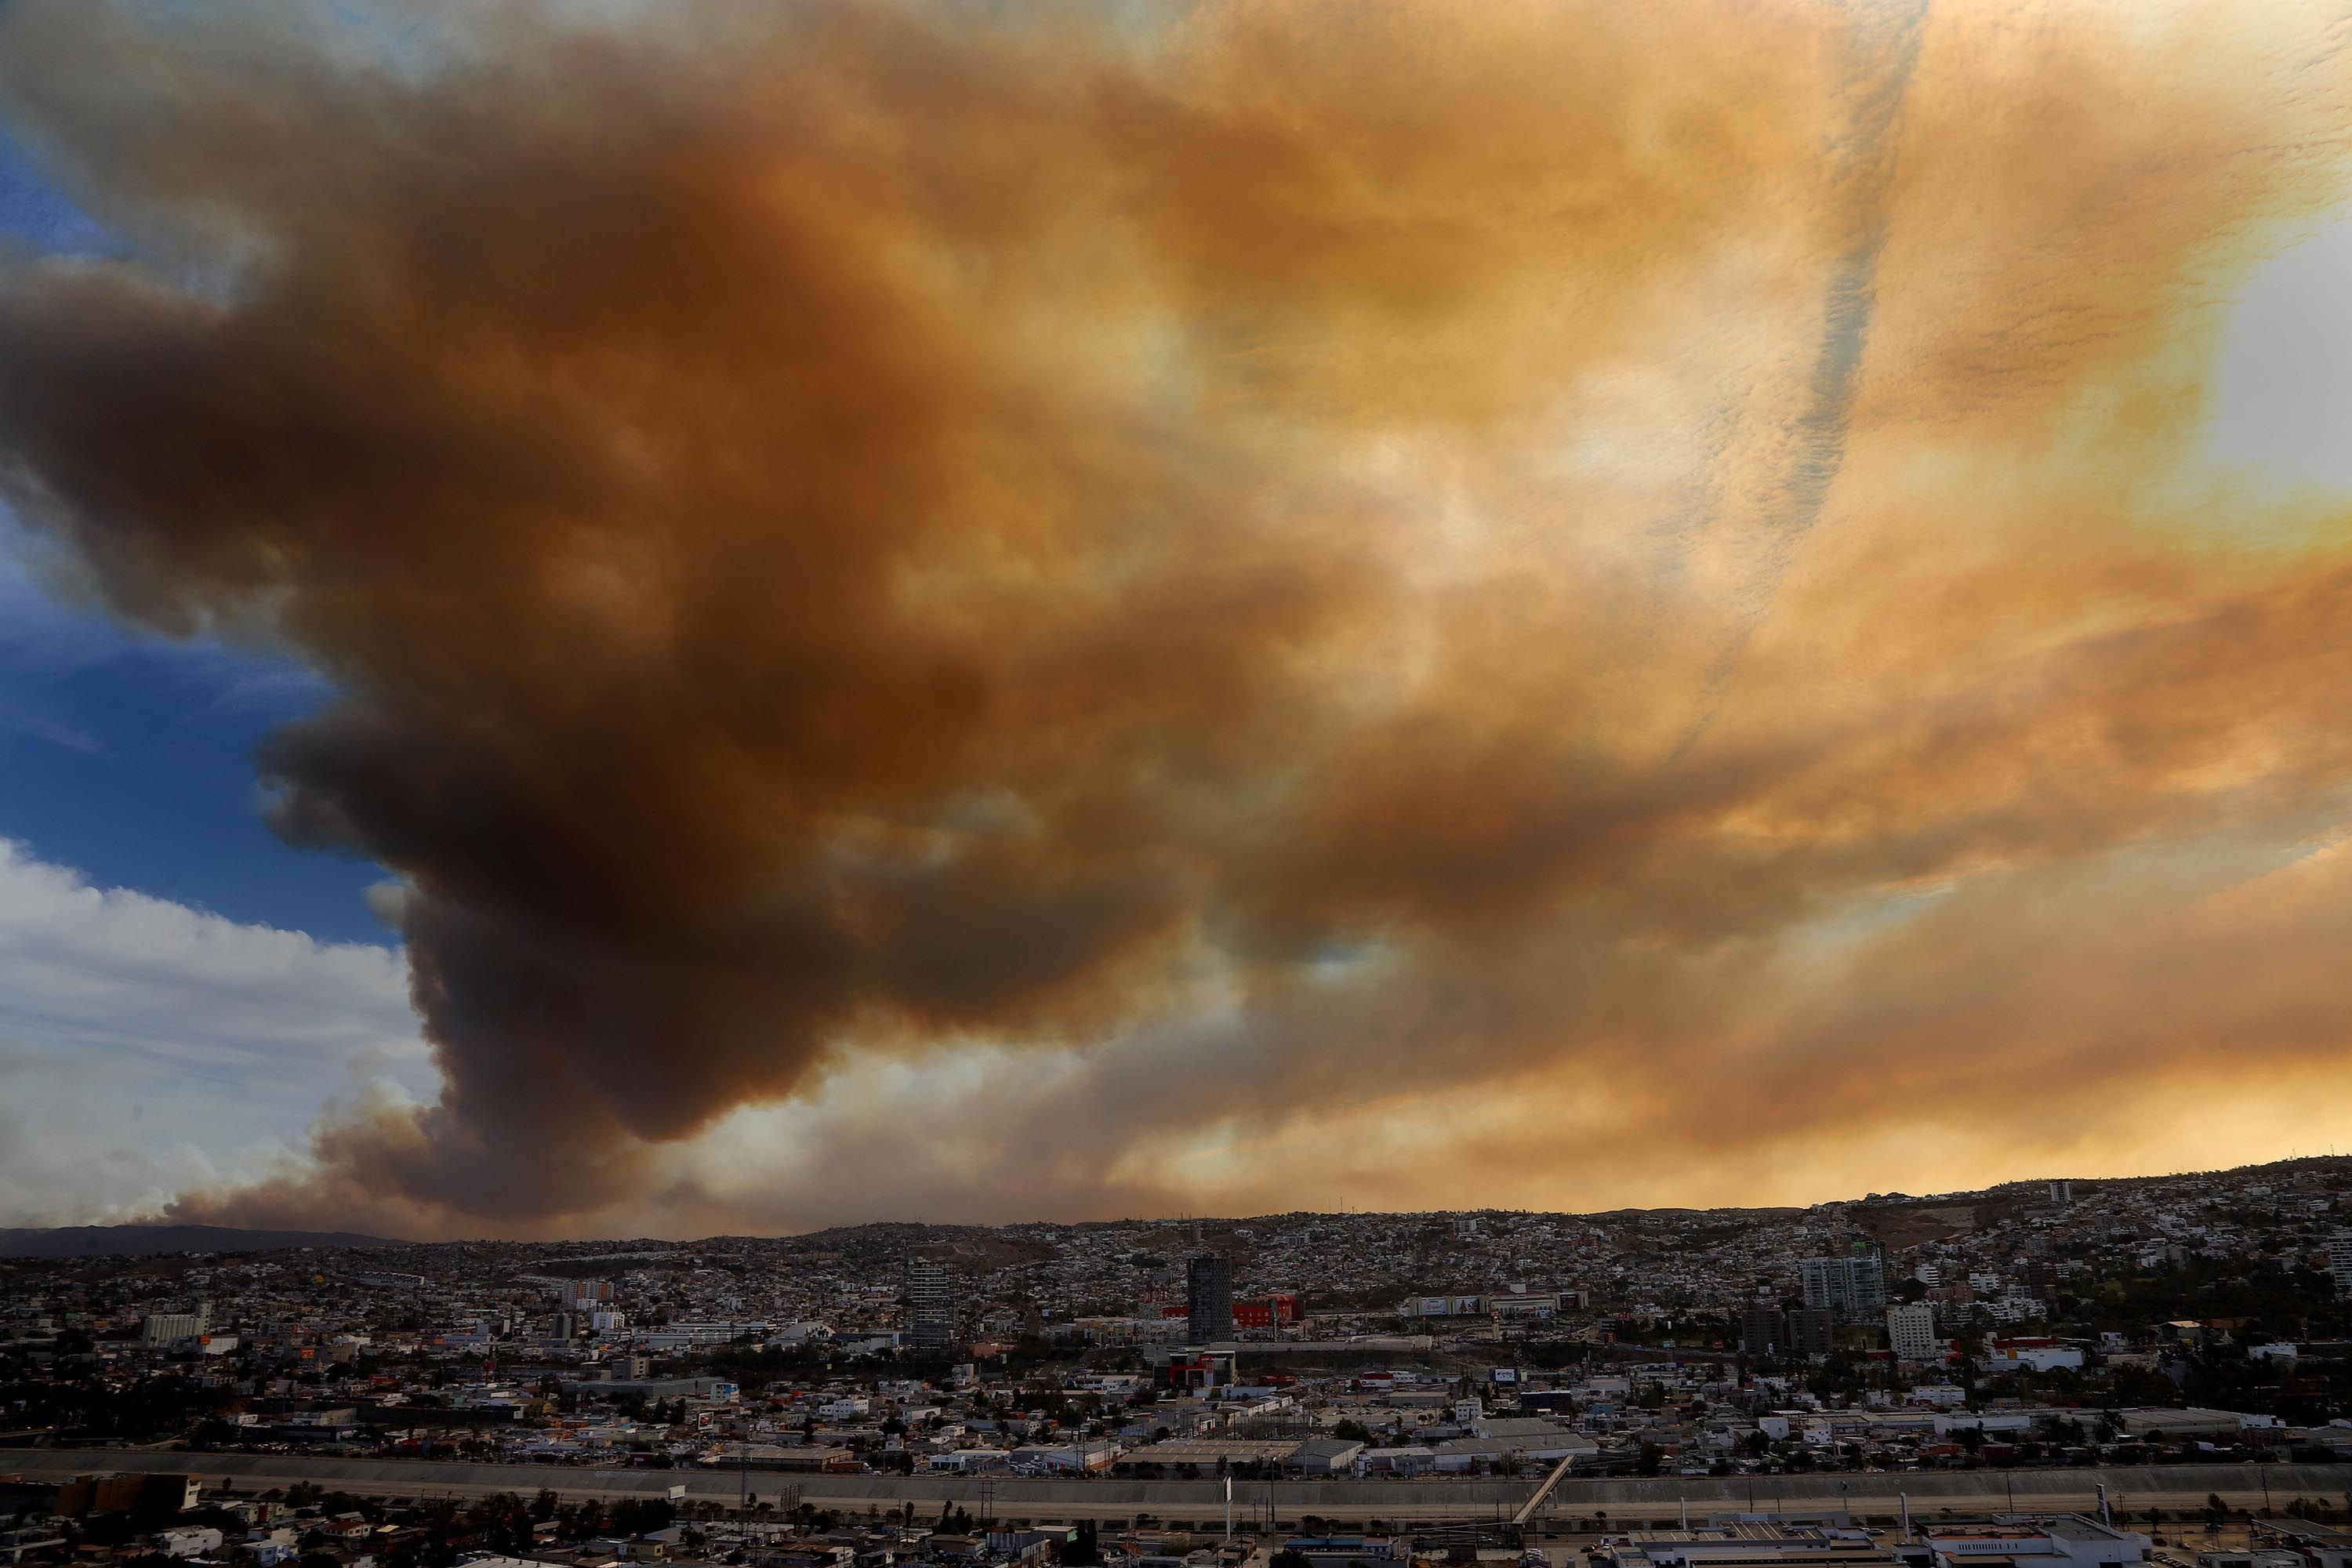 La ciudad de Tijuana se encuentra cubierta por una capa de humo proveniente del los fuertes incendios del Valle de las Palmas entre Tecate y Tijuana a consecuencia de los vientos de la condición Santa Ana lo que ha provocado cenizas y muy mala calidad de aire.